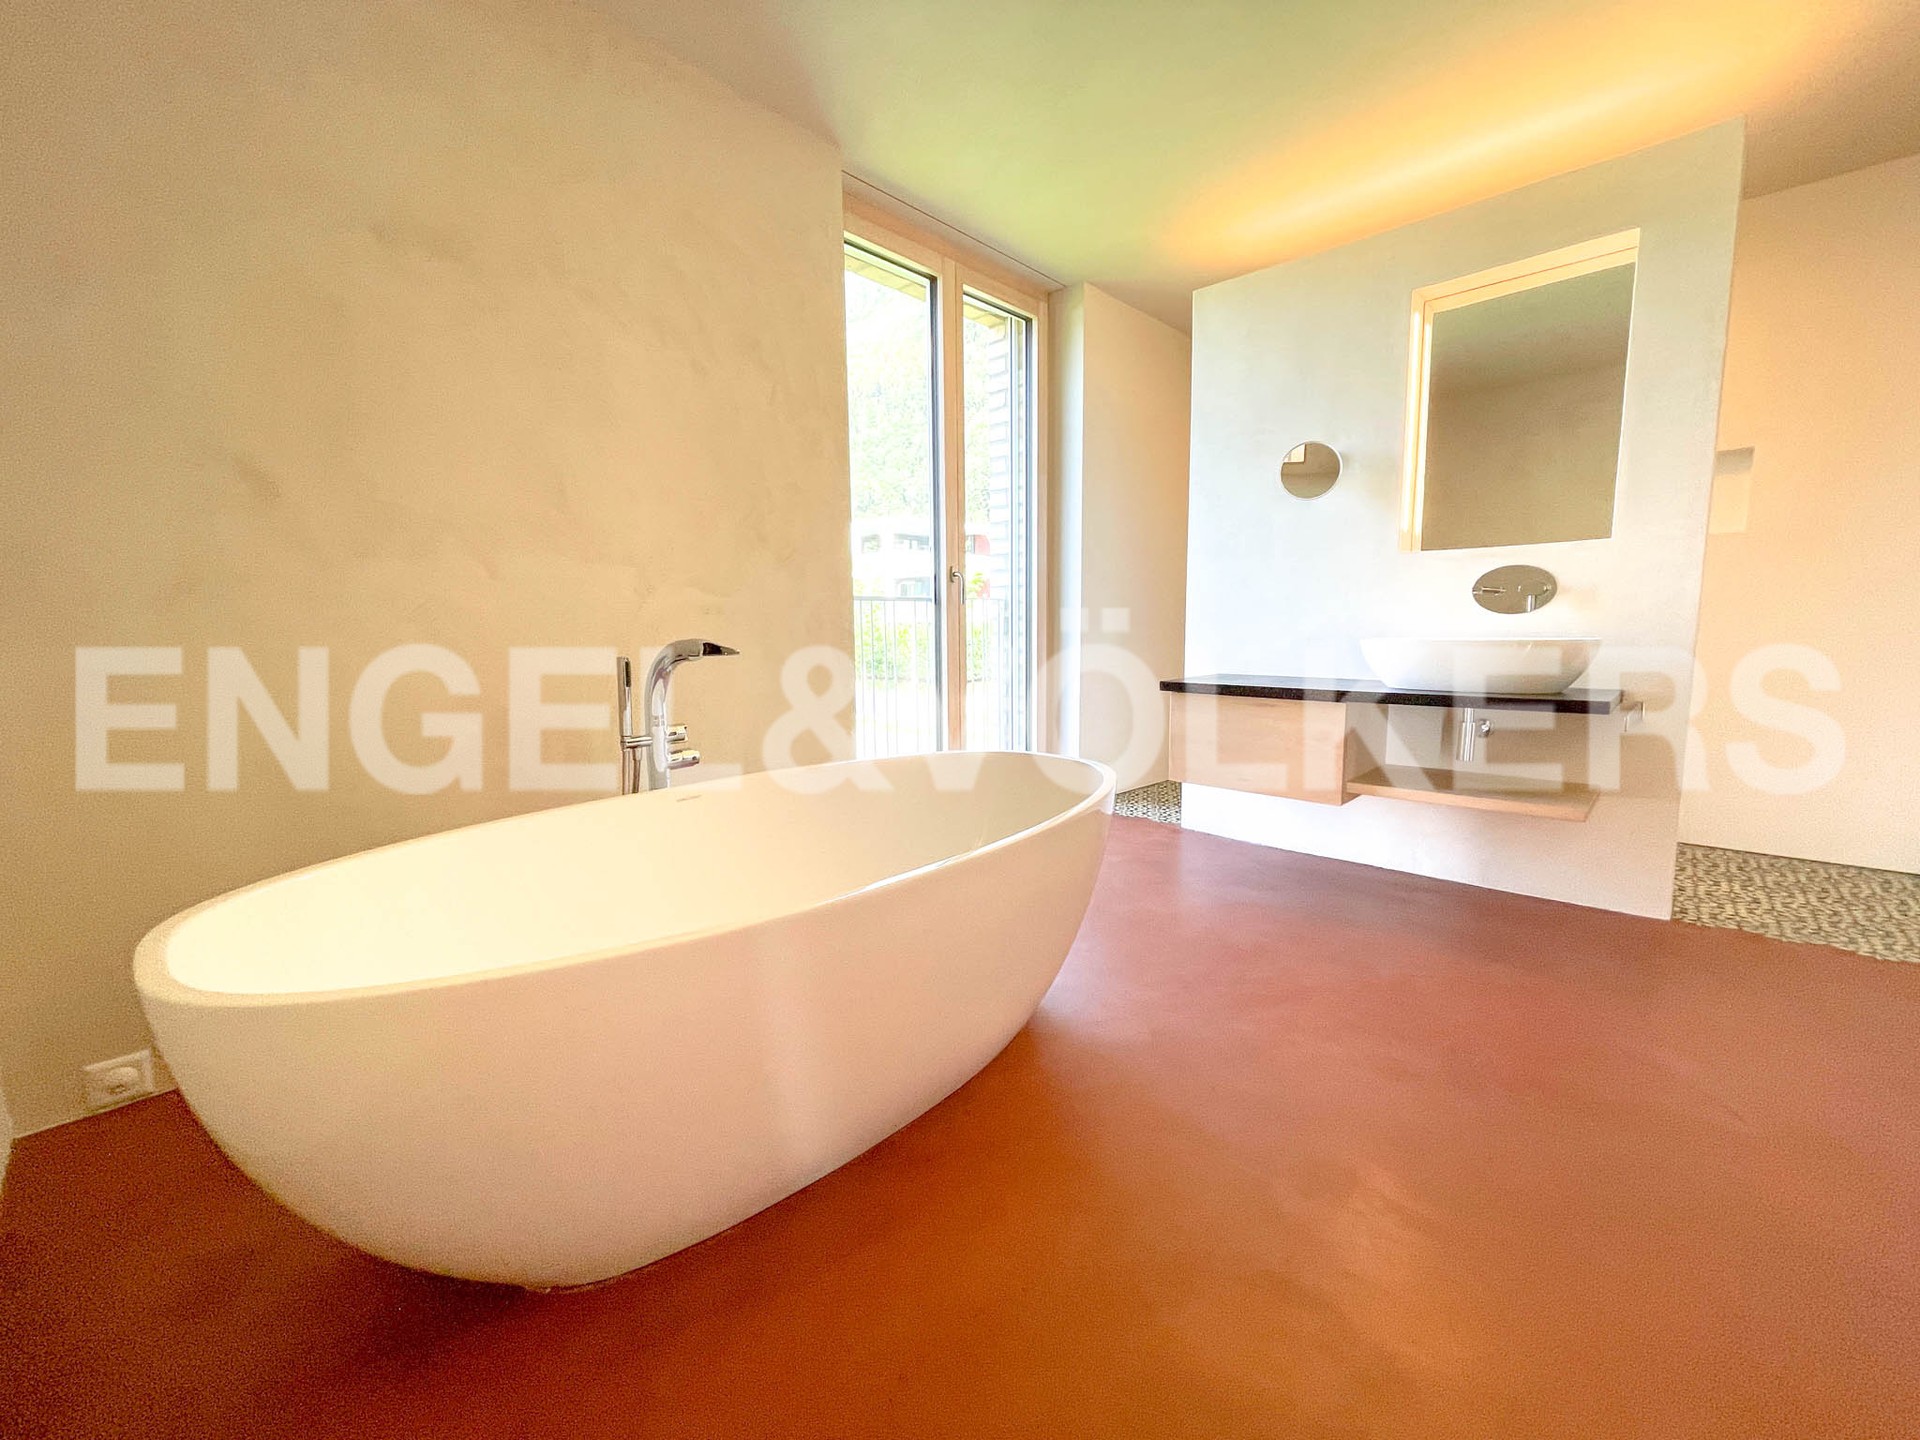 Wohnung in Triesen - grosse freistehende Badewanne mit Platz auch für Zwei